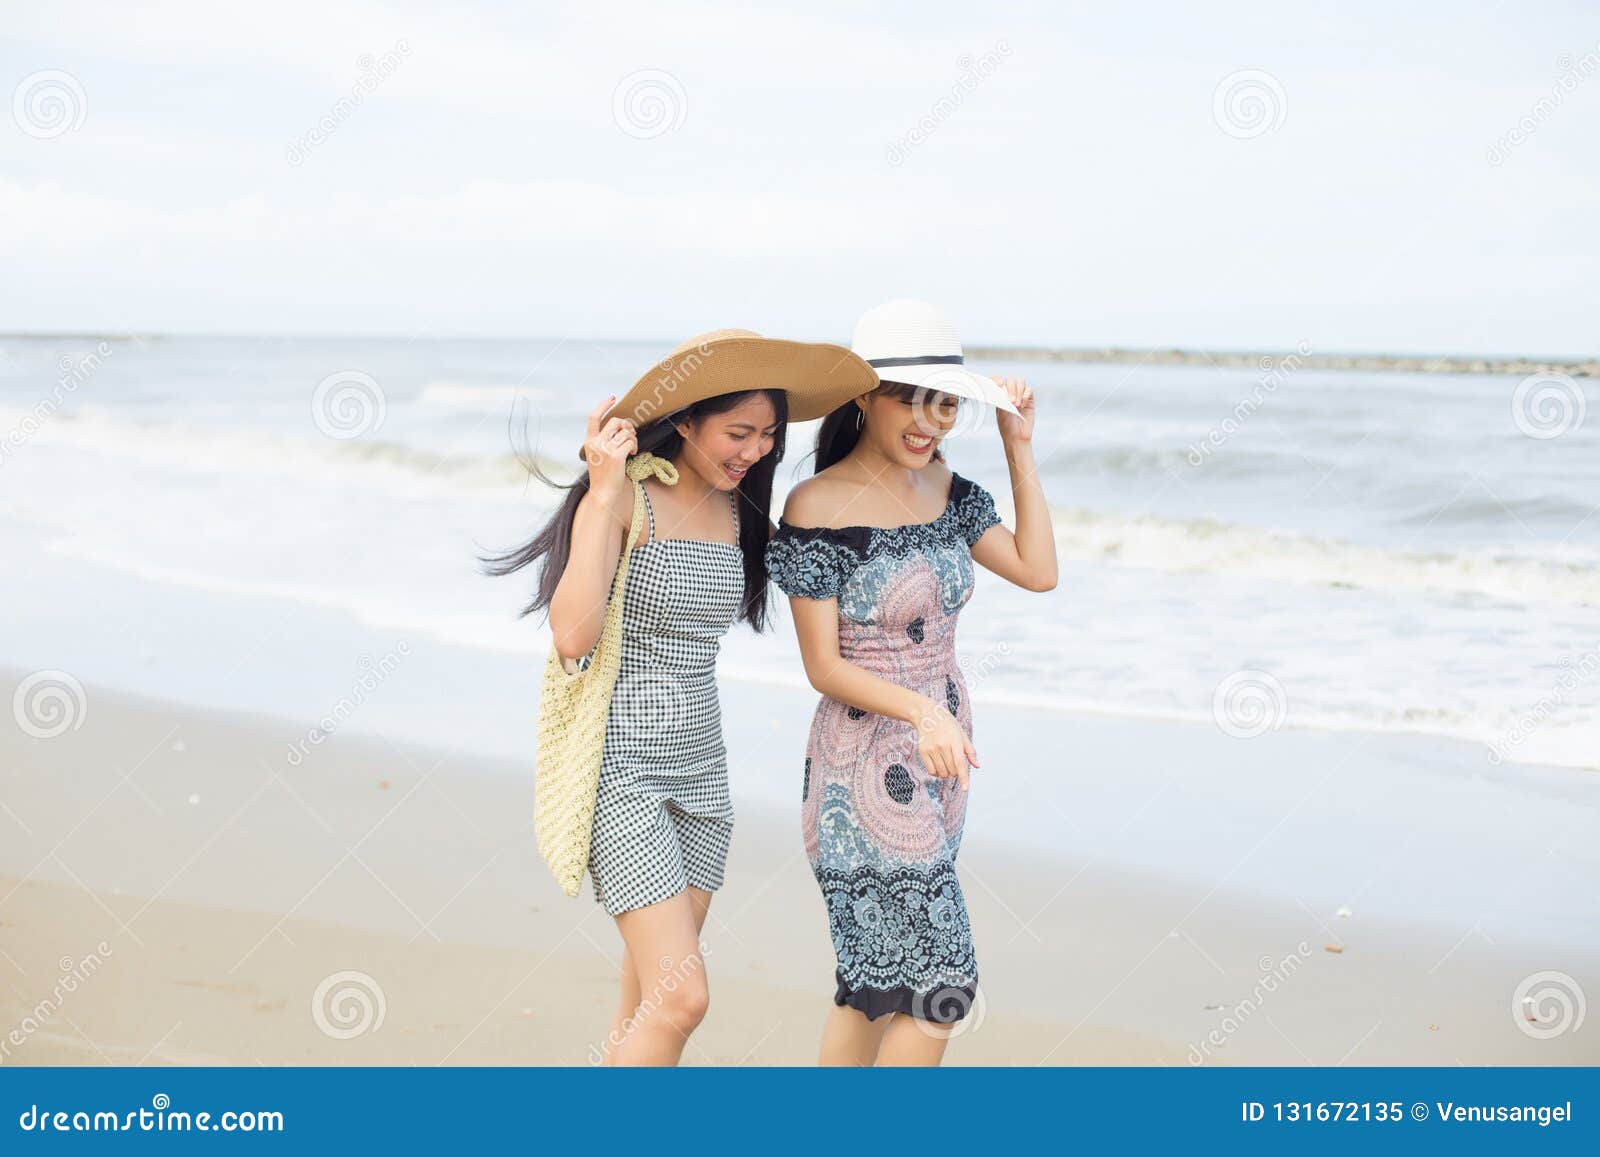 海滩 两个比基尼美女5K图片_4K美女图片高清壁纸_墨鱼部落格